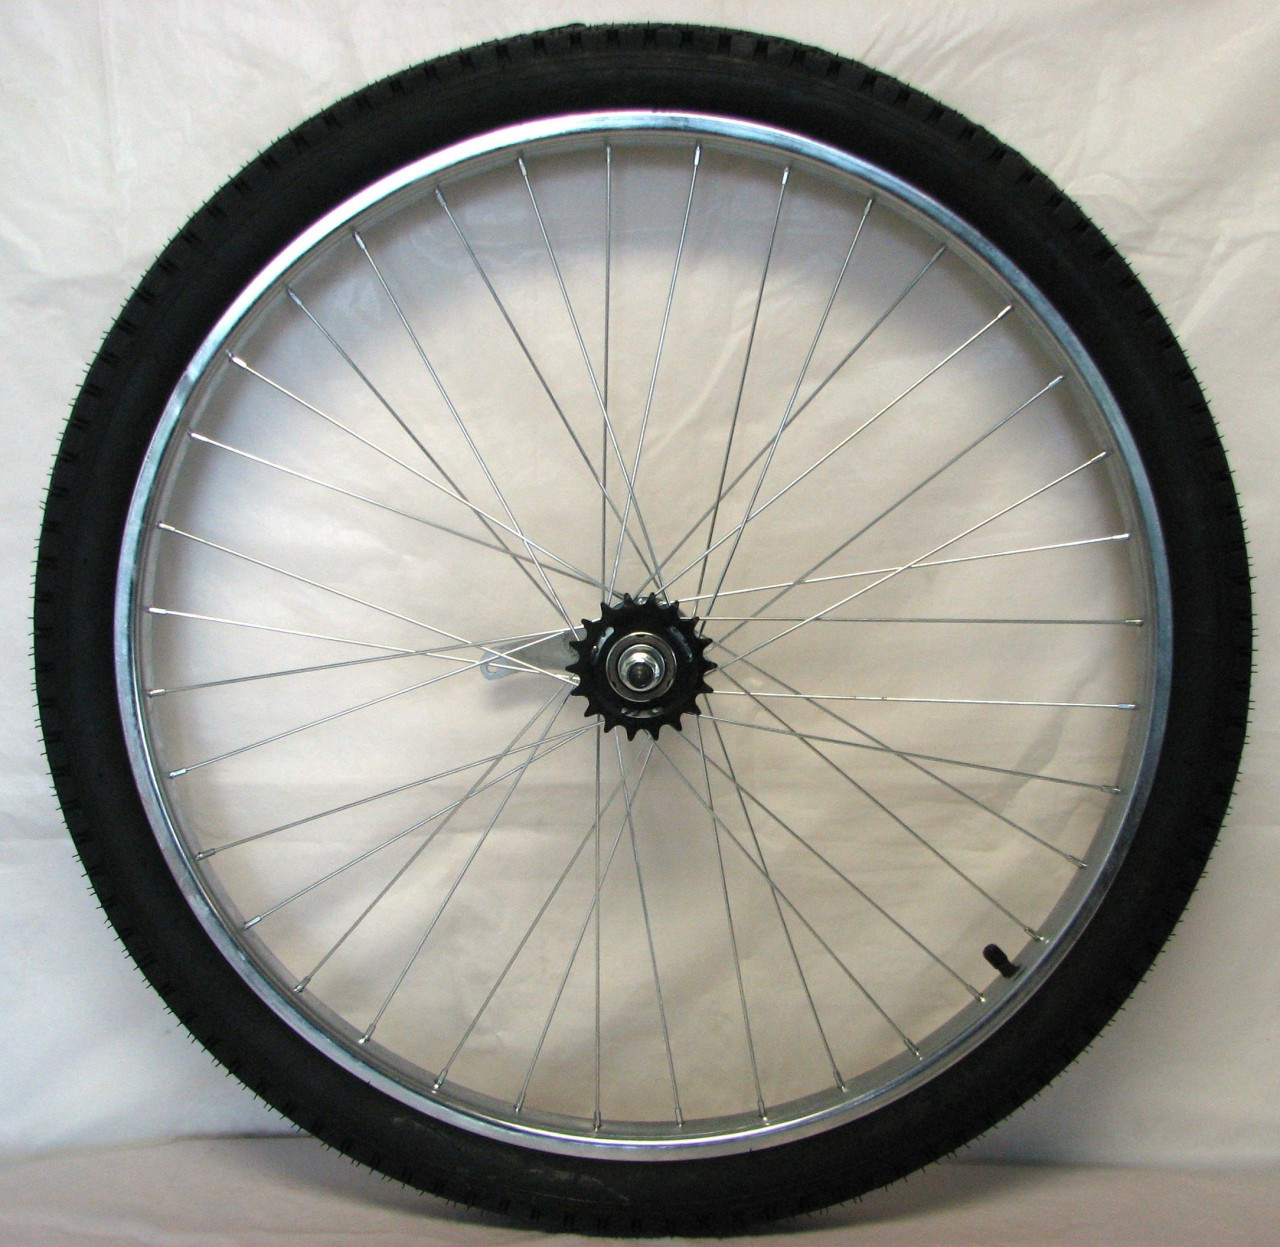 26x2 125 bike tire